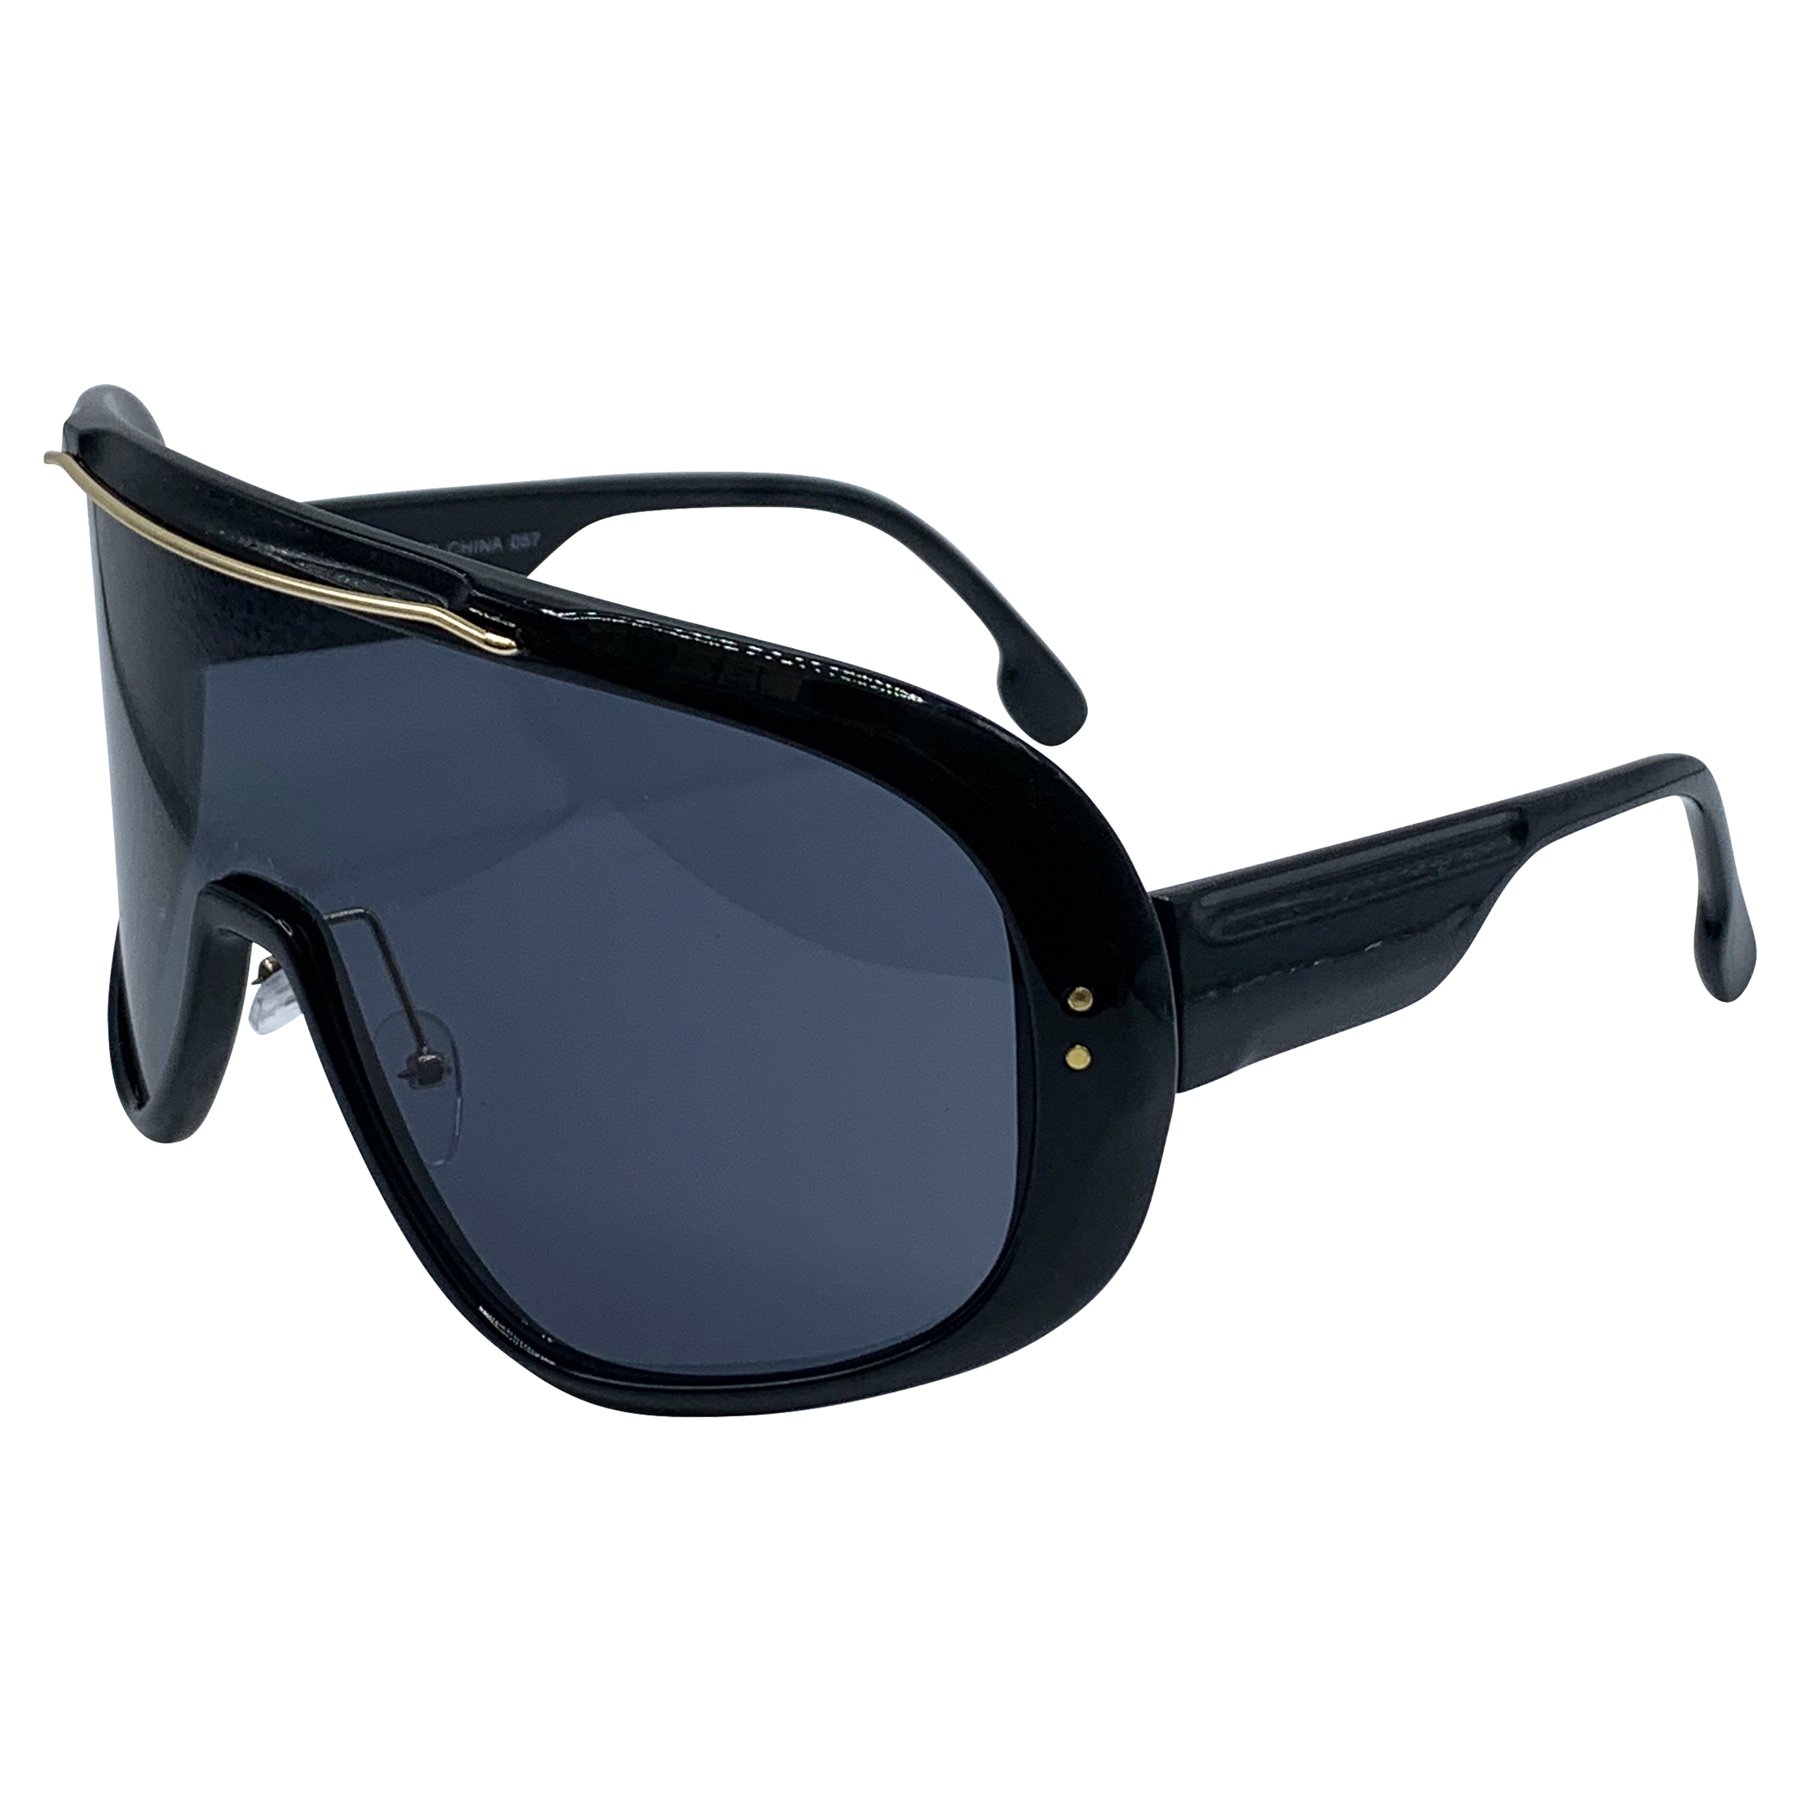 AVALANCHE Retro-Style Ski Shield Sunglasses